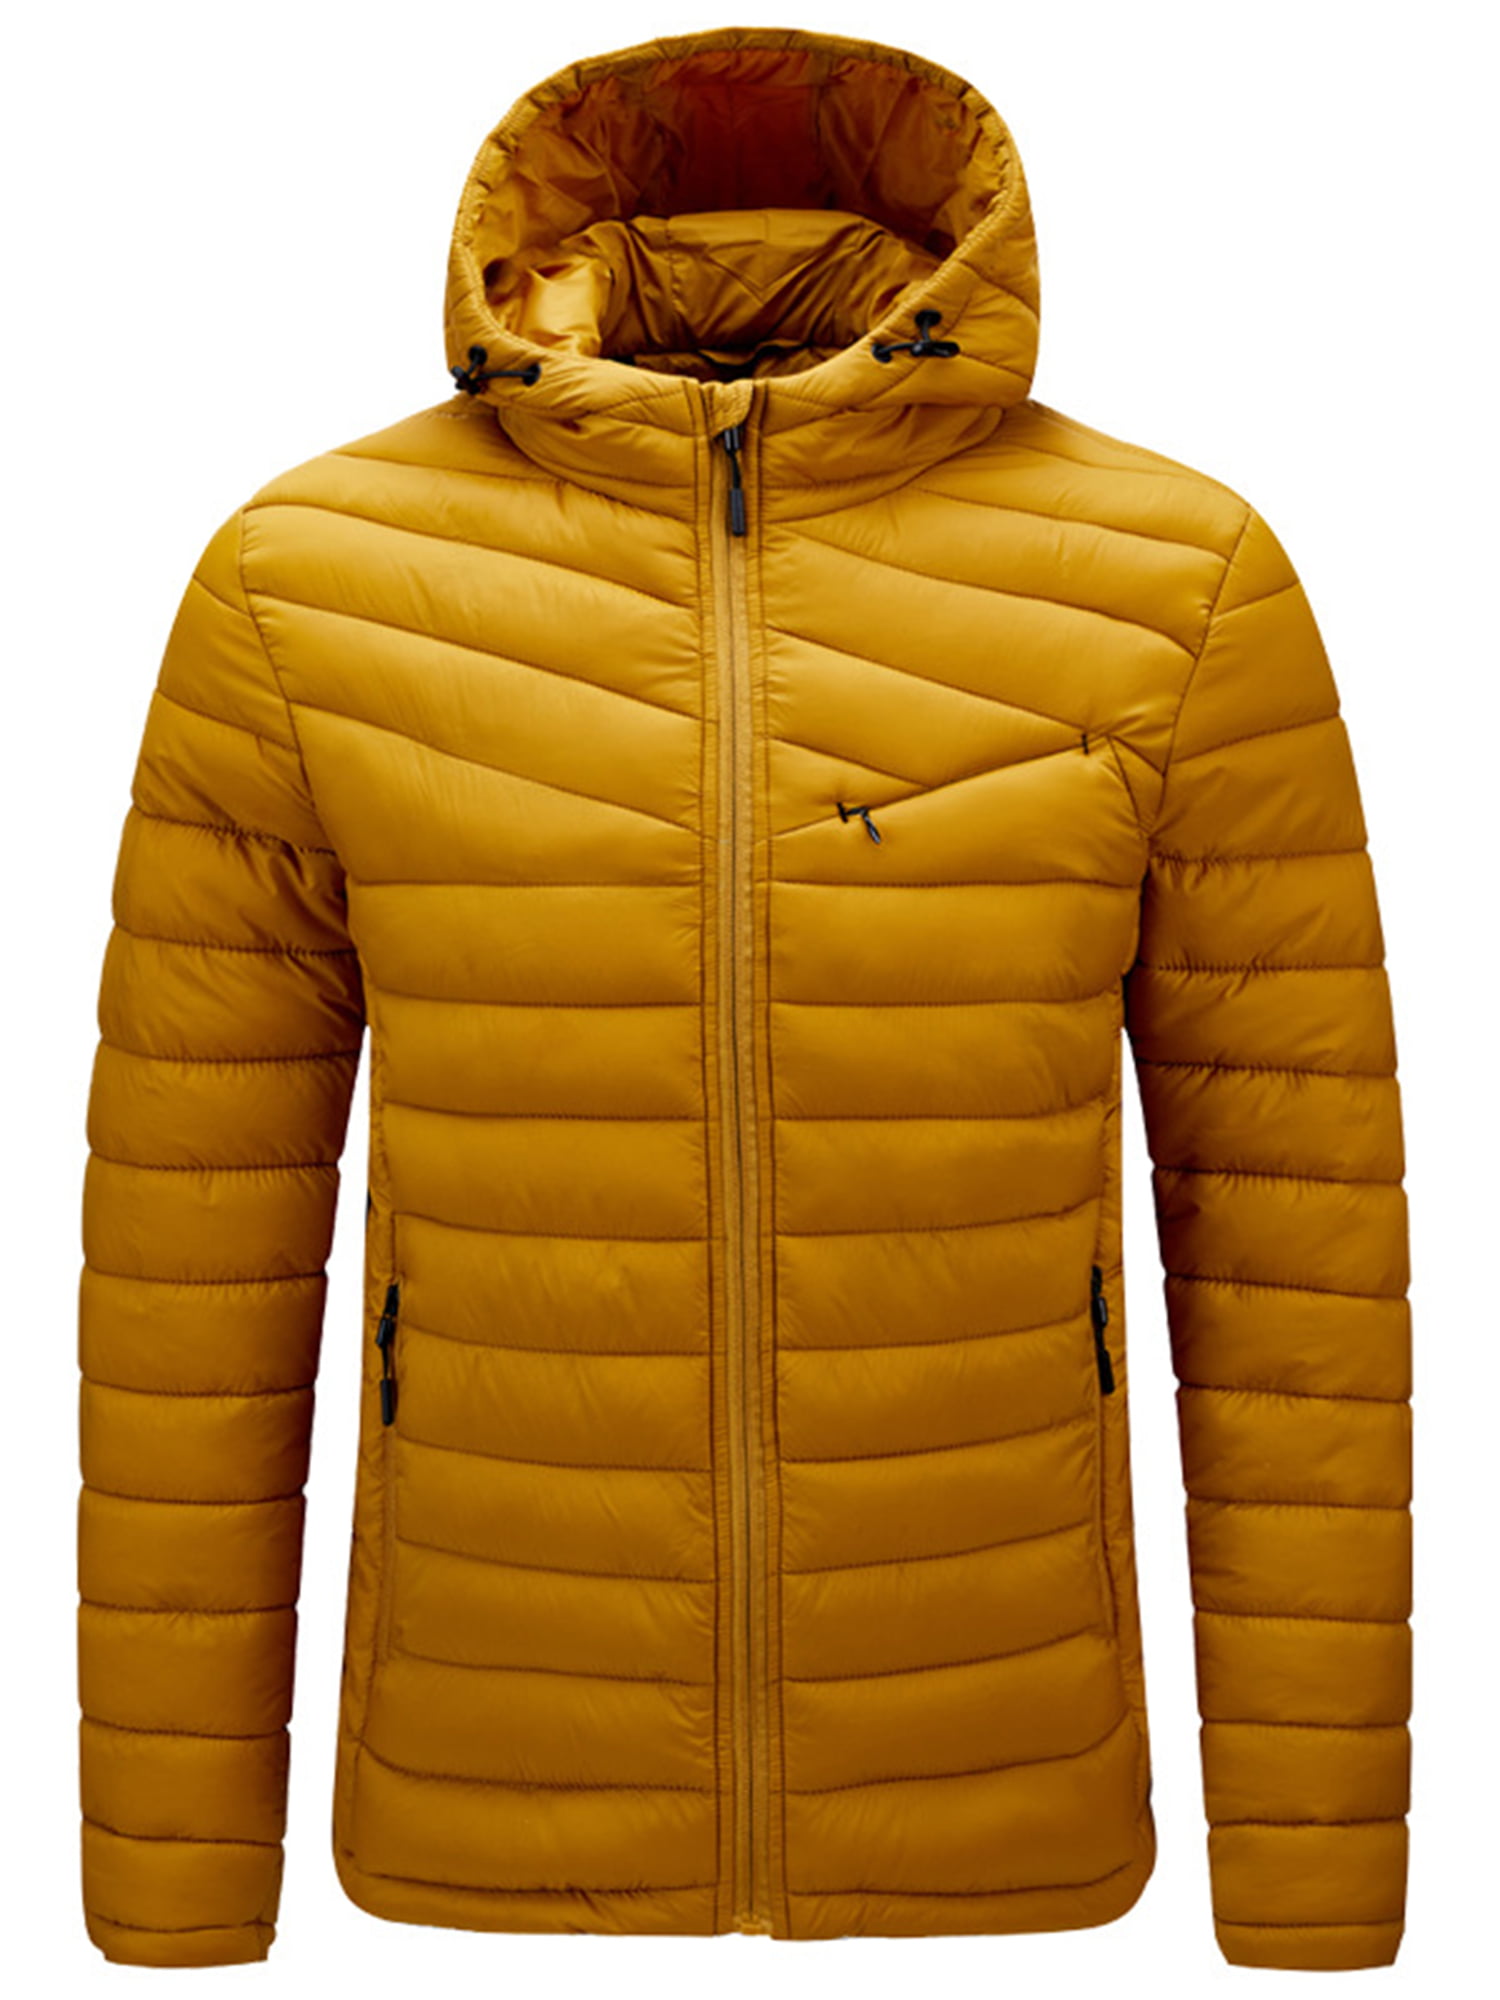 Men's Winter Warm Puffer Hoodies Hooded Coat Jacket Sweatshirt Tops Outwear Zip 